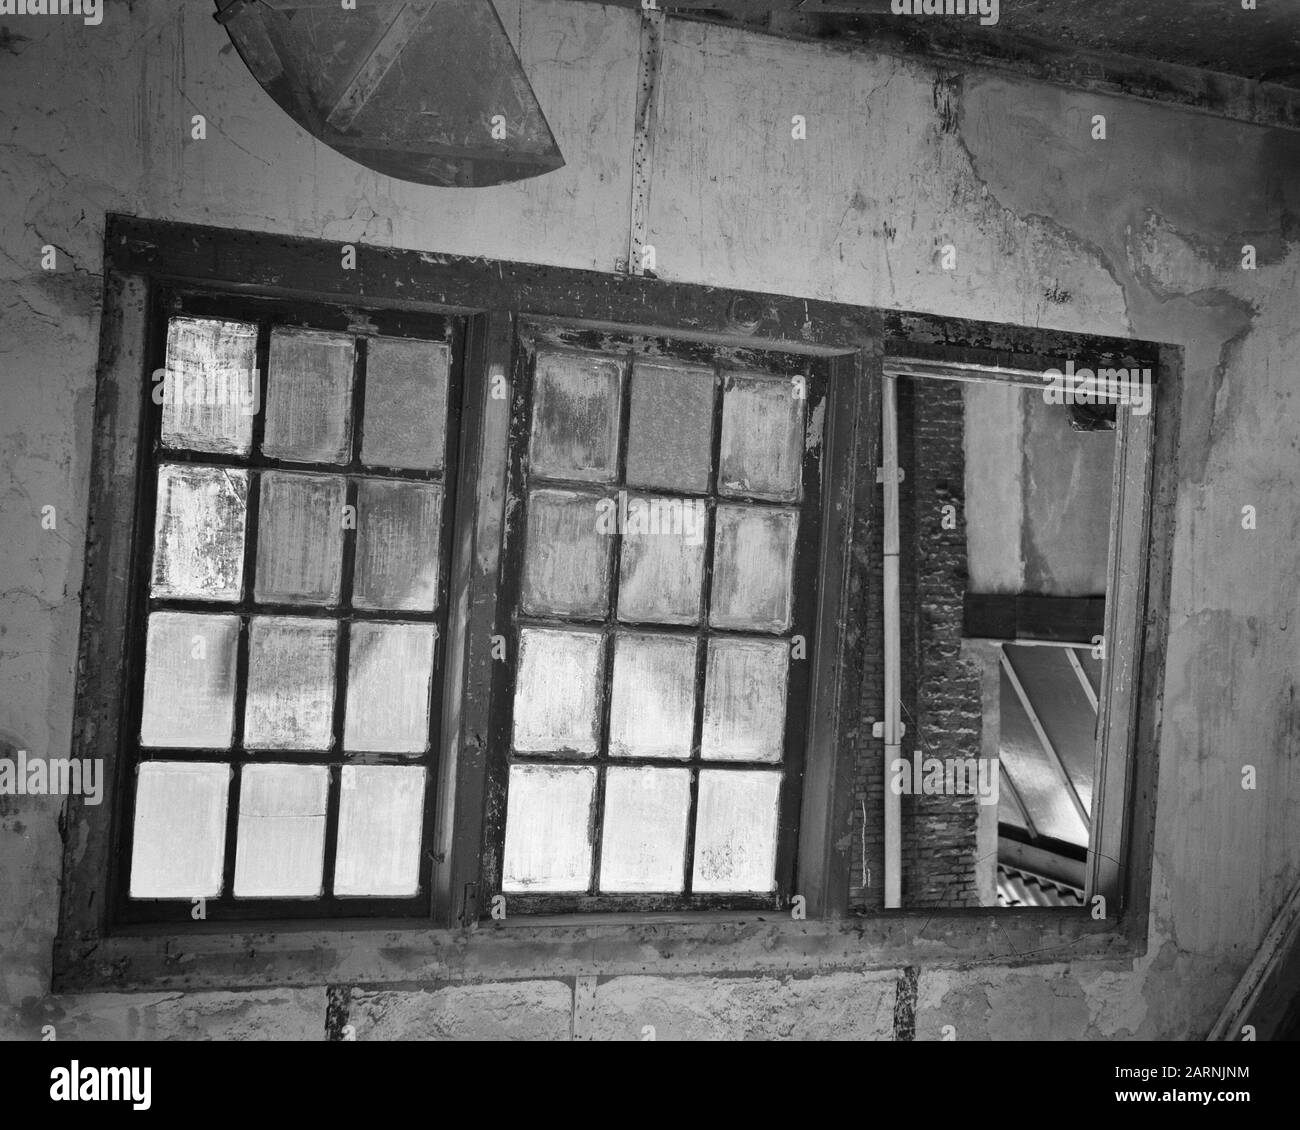 Geheimfenster im Geheim-Anhang von Anne Frank Datum: 25. März 1957 Ort: Amsterdam, Noord-Holland Schlüsselwörter: Innenräume, Fenster Stockfoto